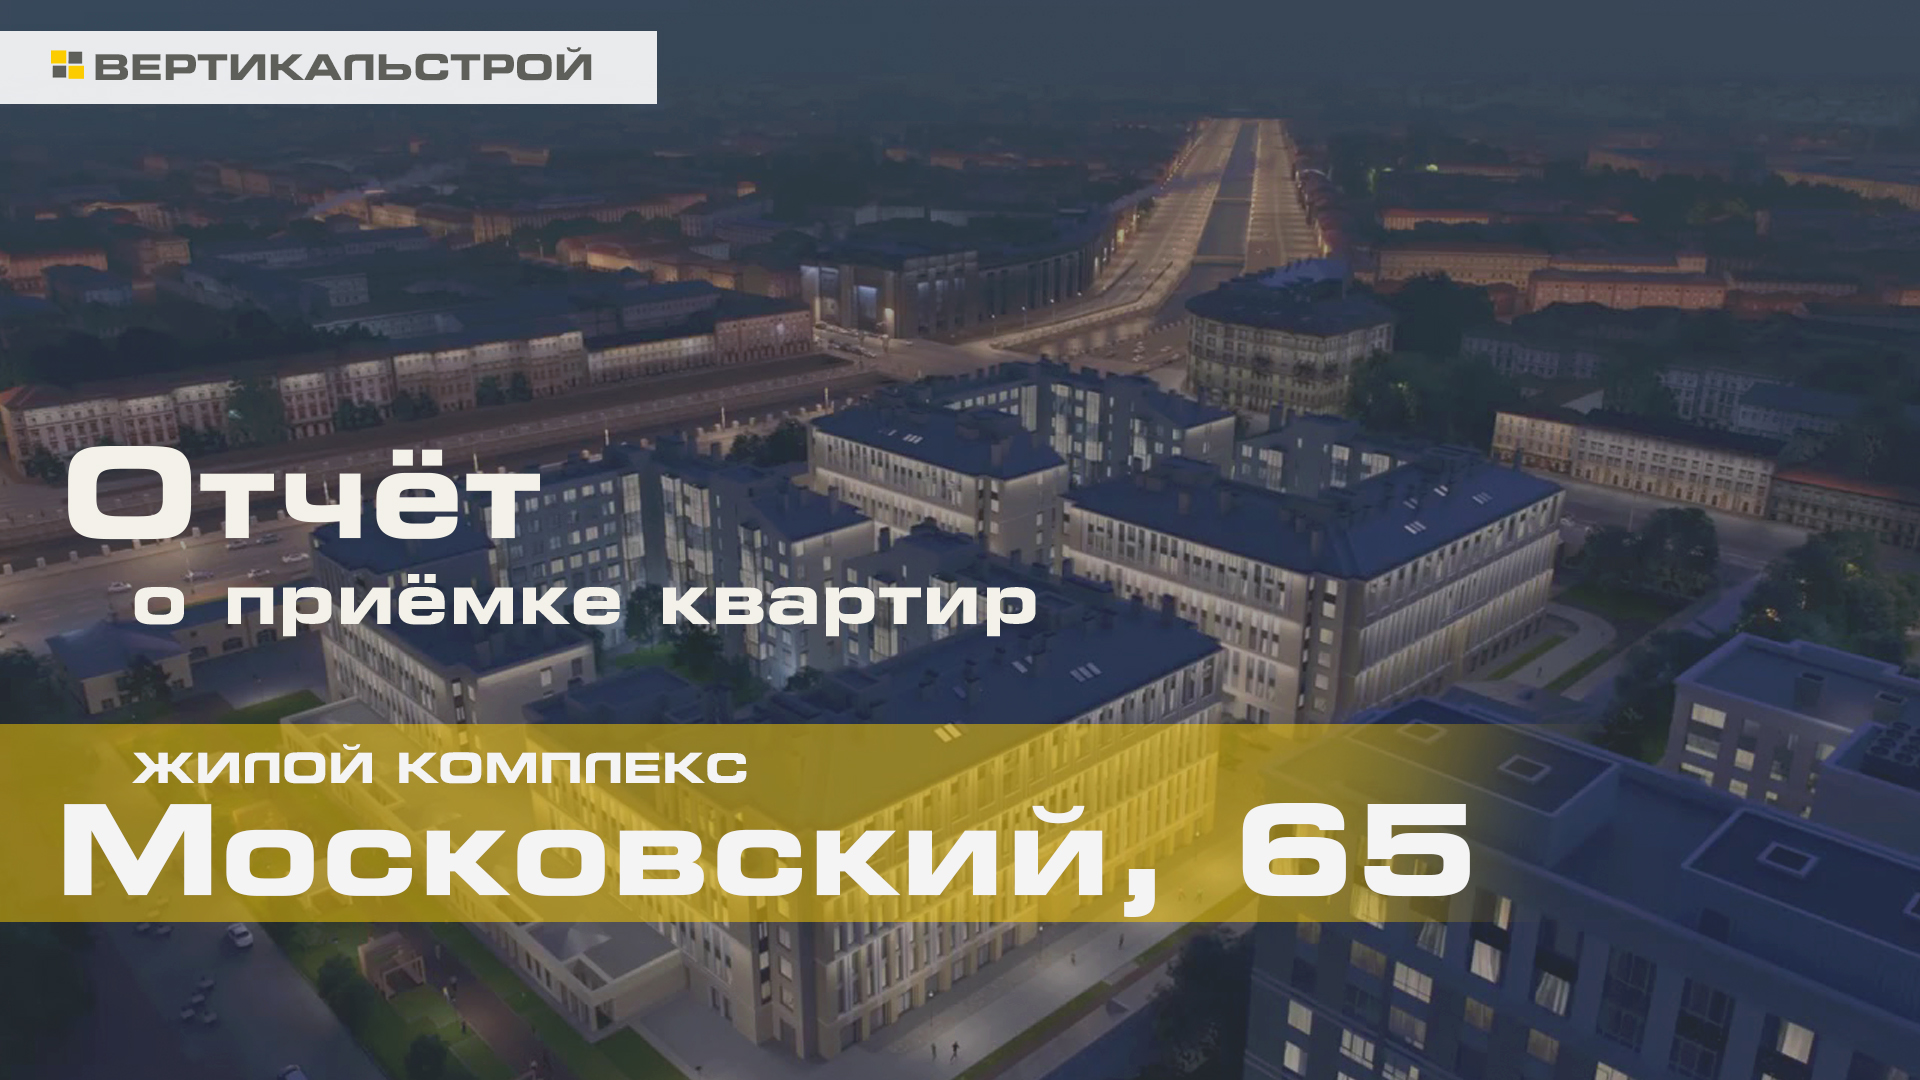 Московский 65 от Легенда - Приёмка квартиры от ВЕРТИКАЛЬСТРОЙ